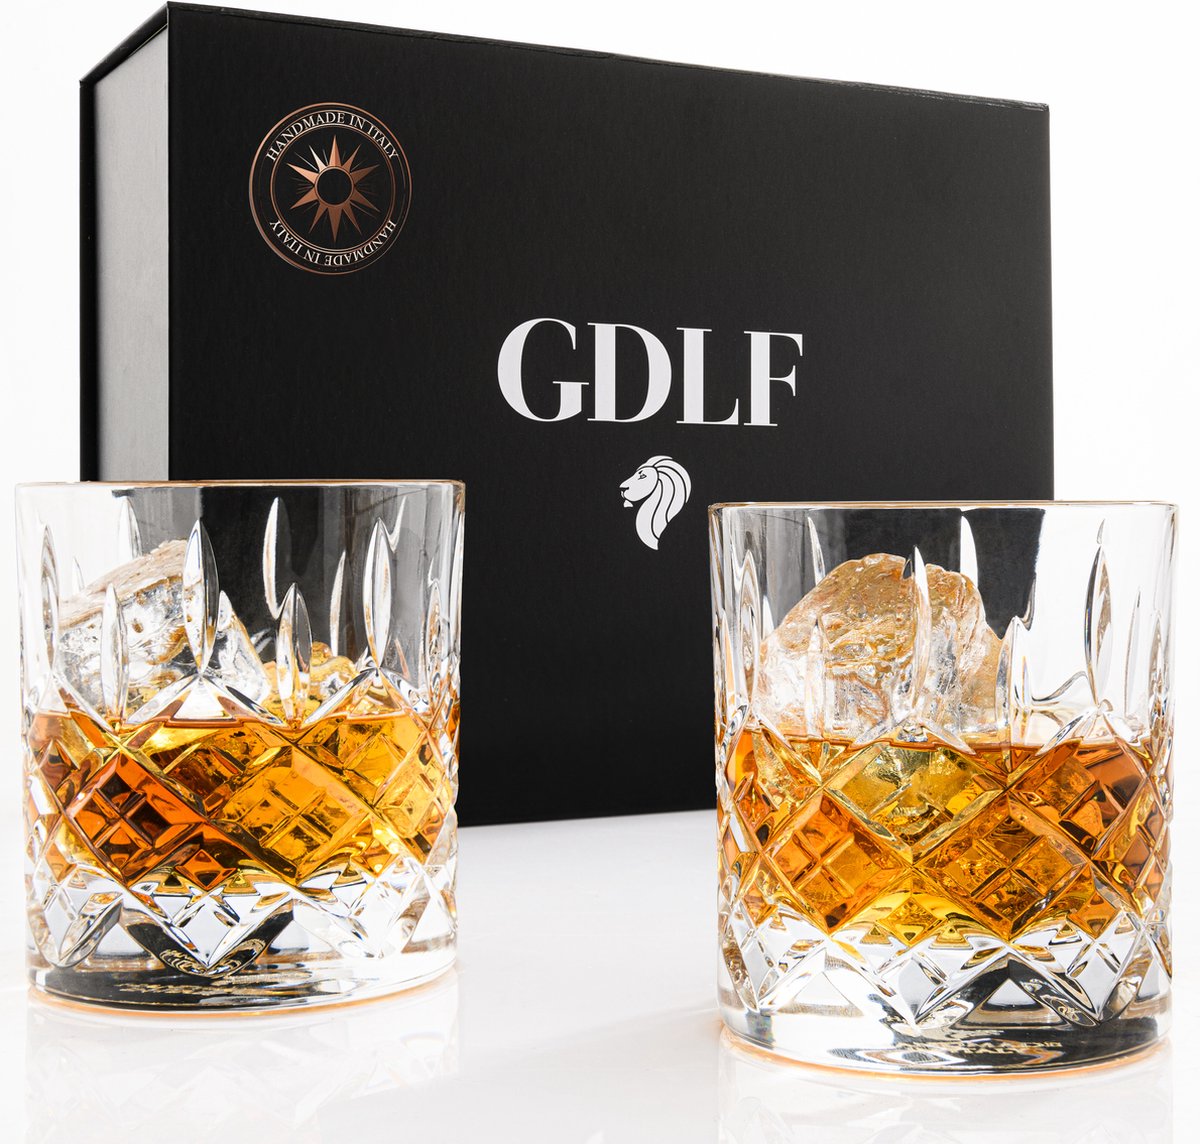 Kristallen Whiskyglazen Royal in Giftbox by GDLF